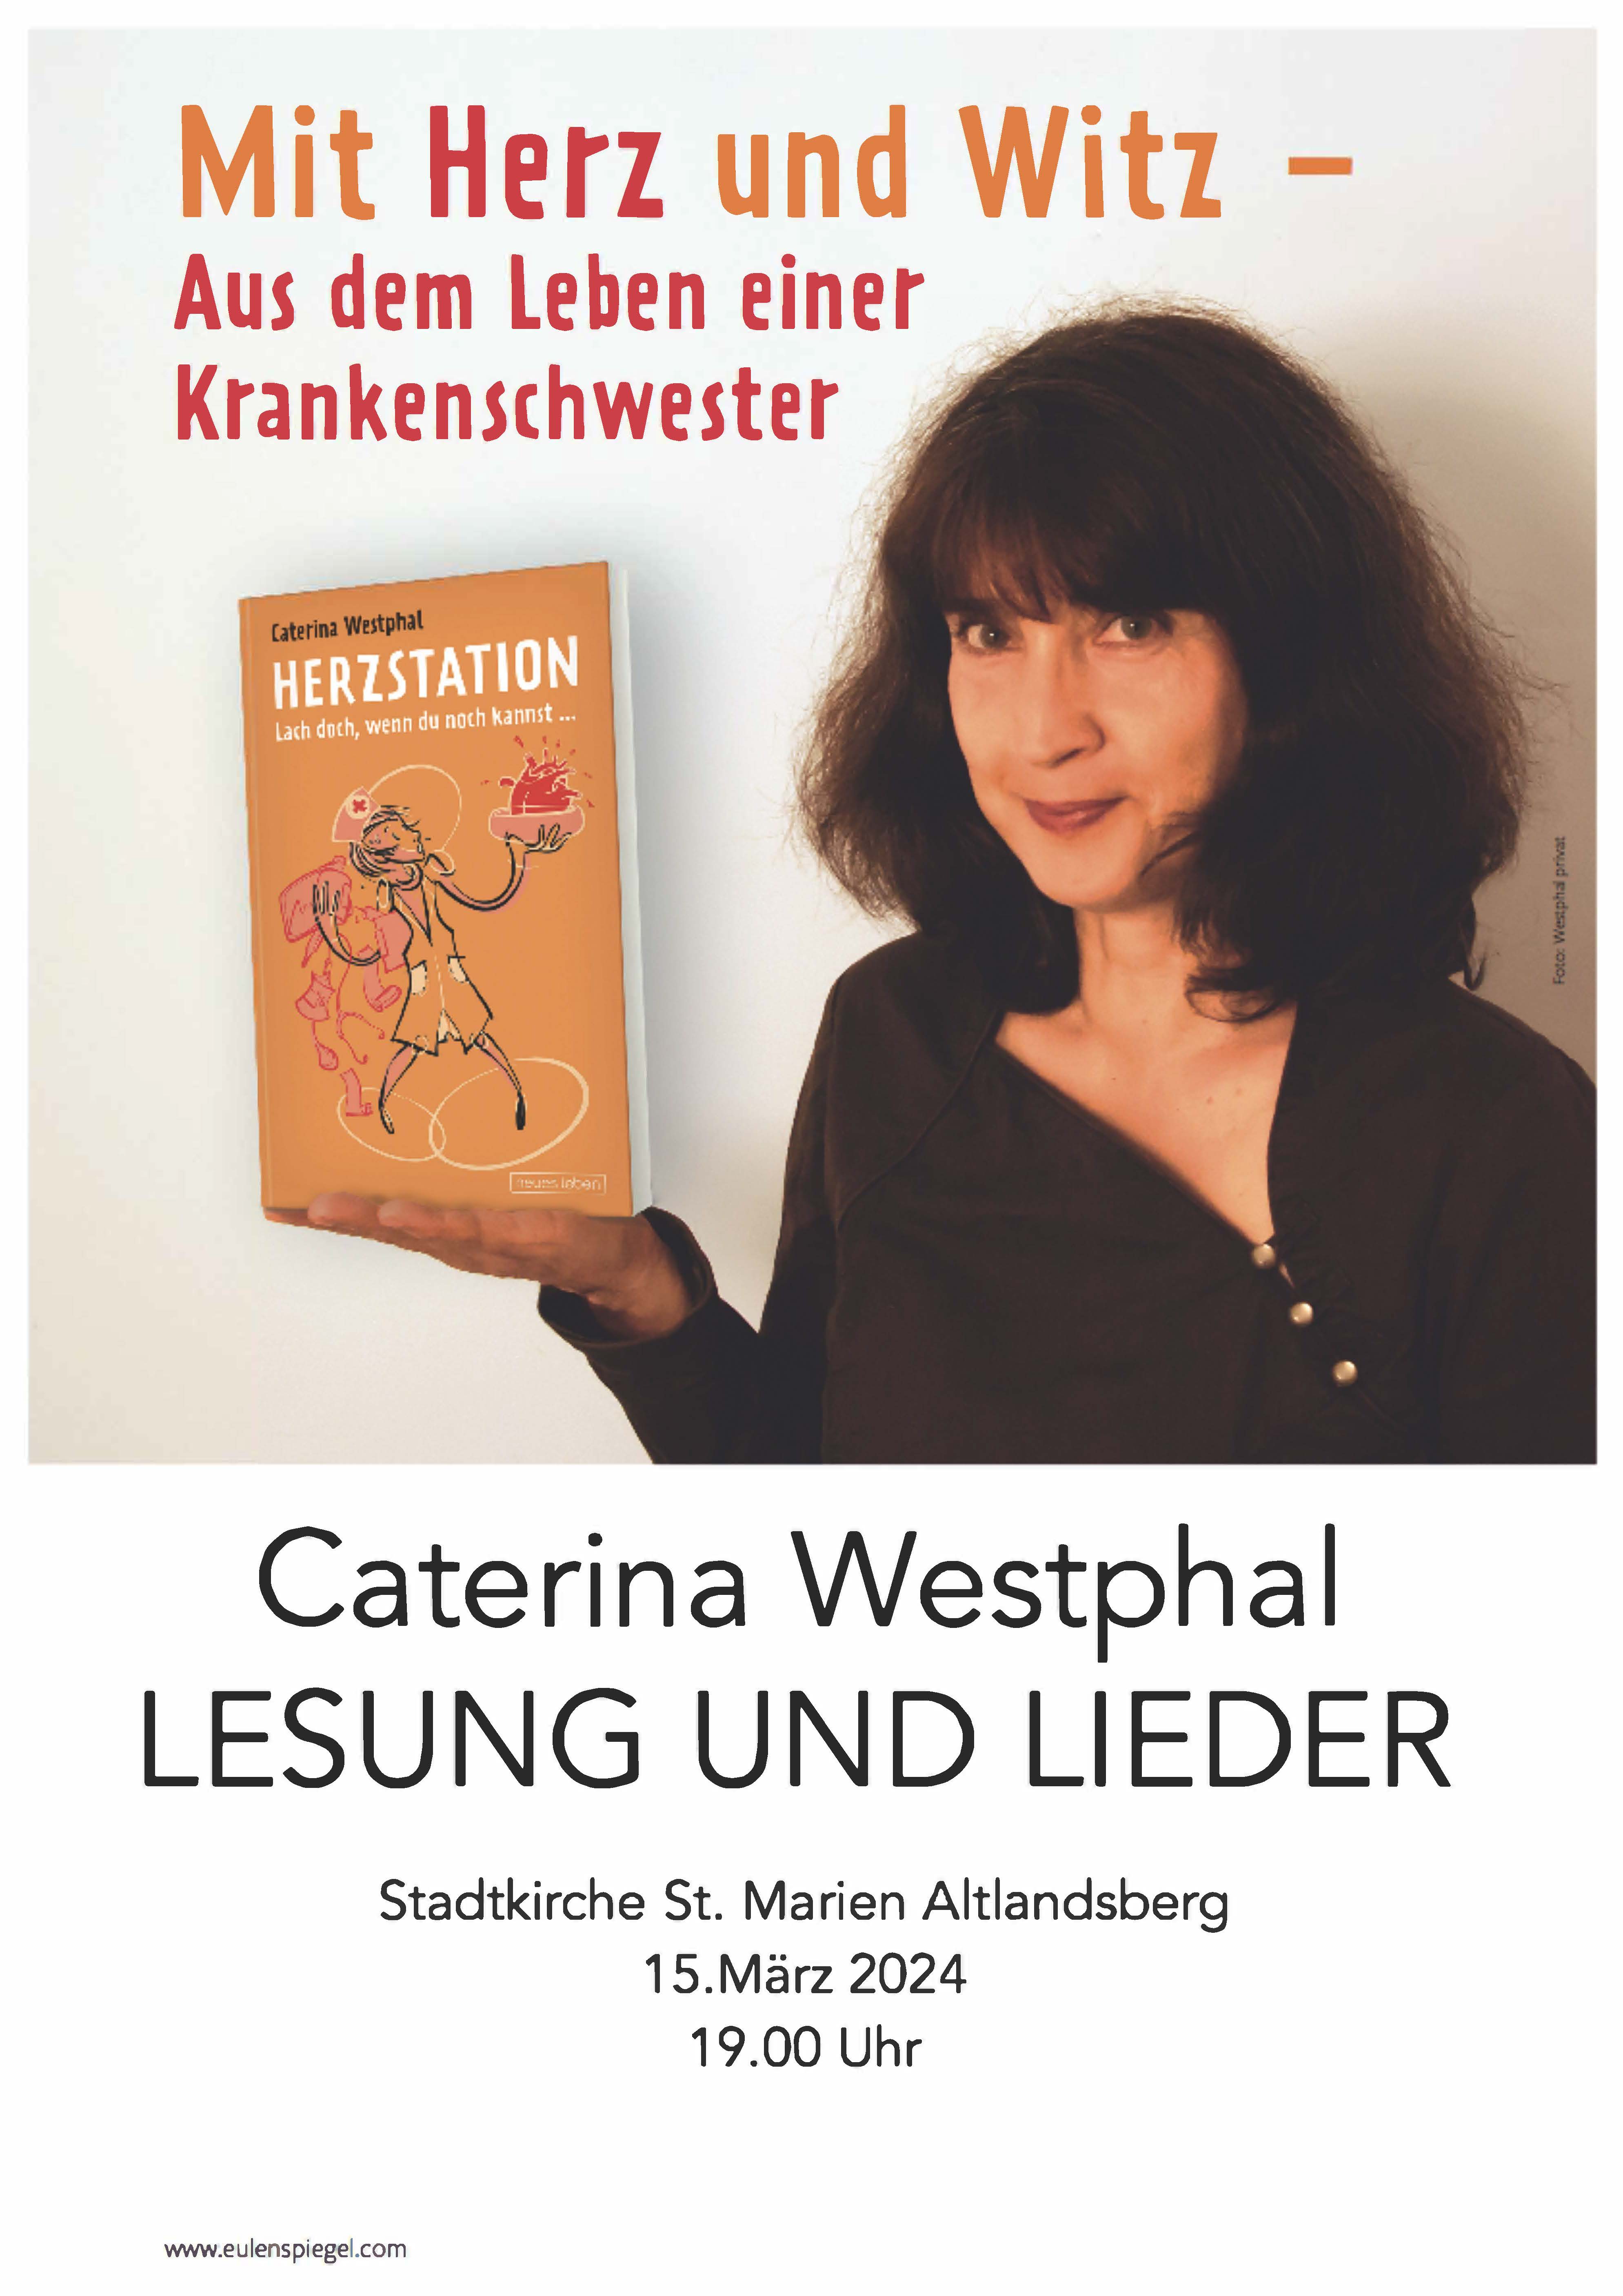 Caterina Westphal, Lesung und Lieder Altlandsberg, 15.März 2024, 19Uhr in der Stadtkirche Sankt Marien